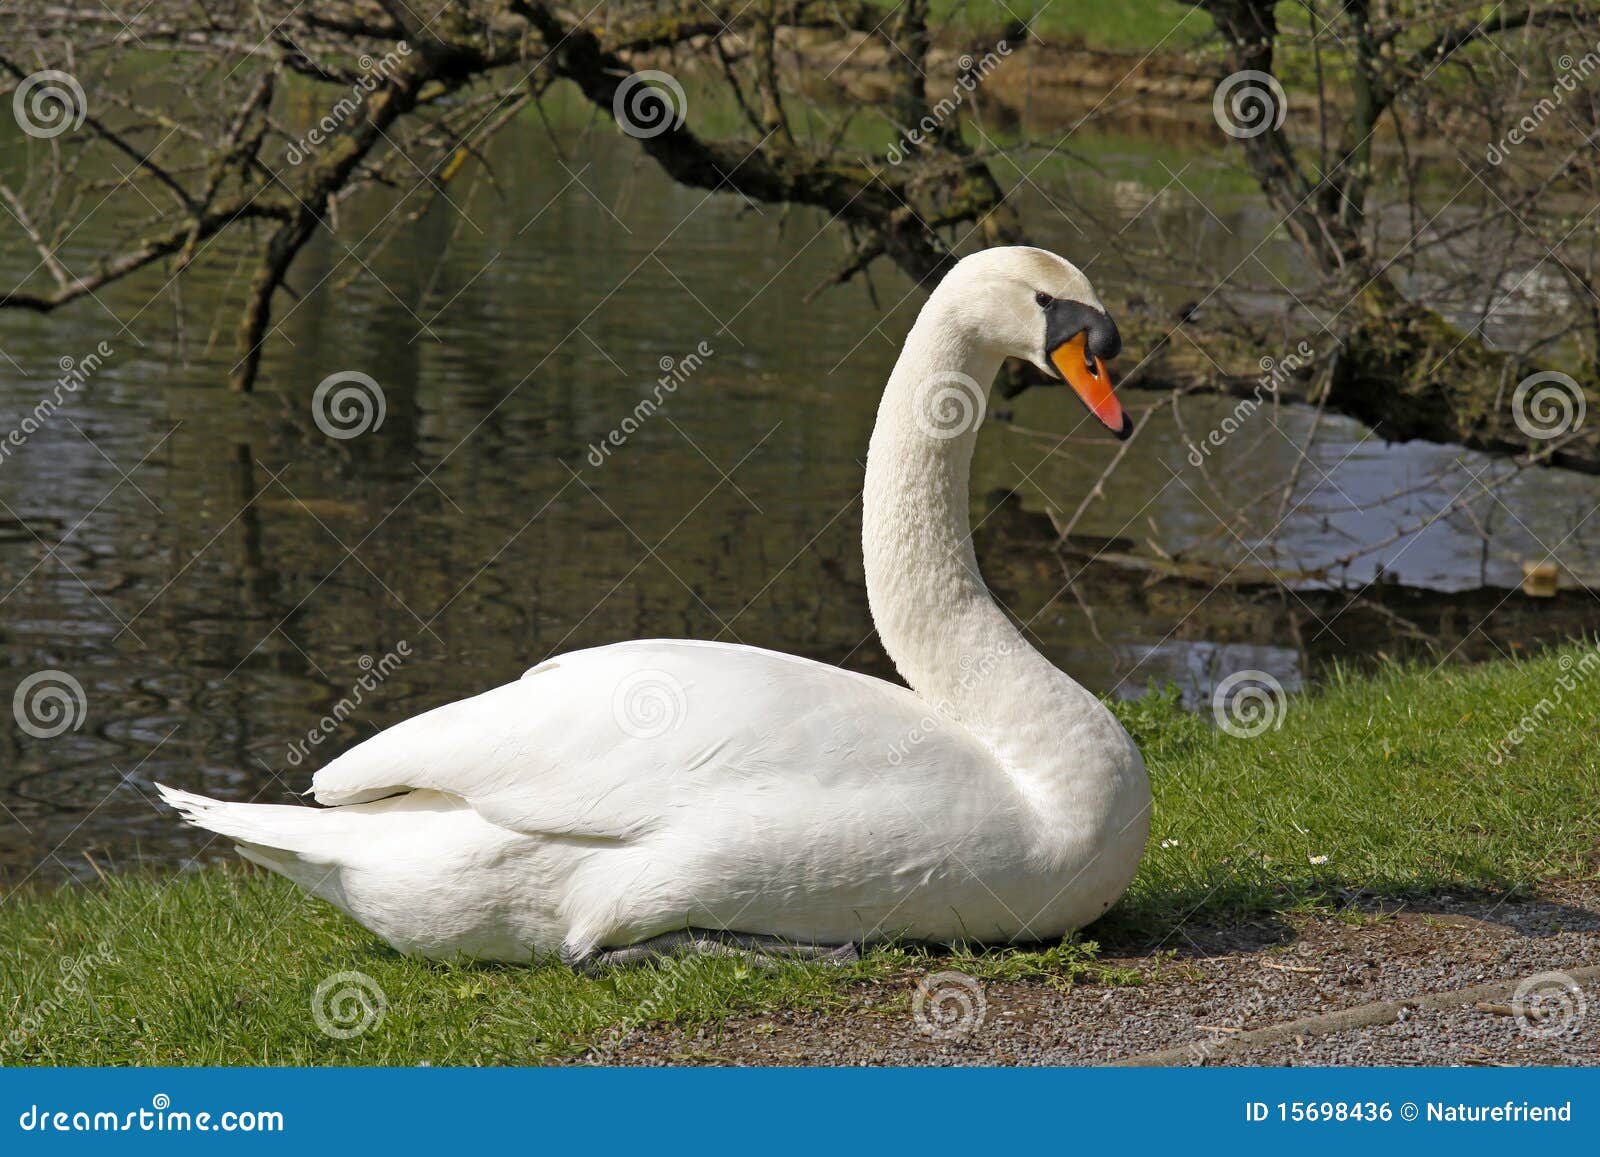 hÃÂ¶ckerschwan (cygnus olor) - mute swan